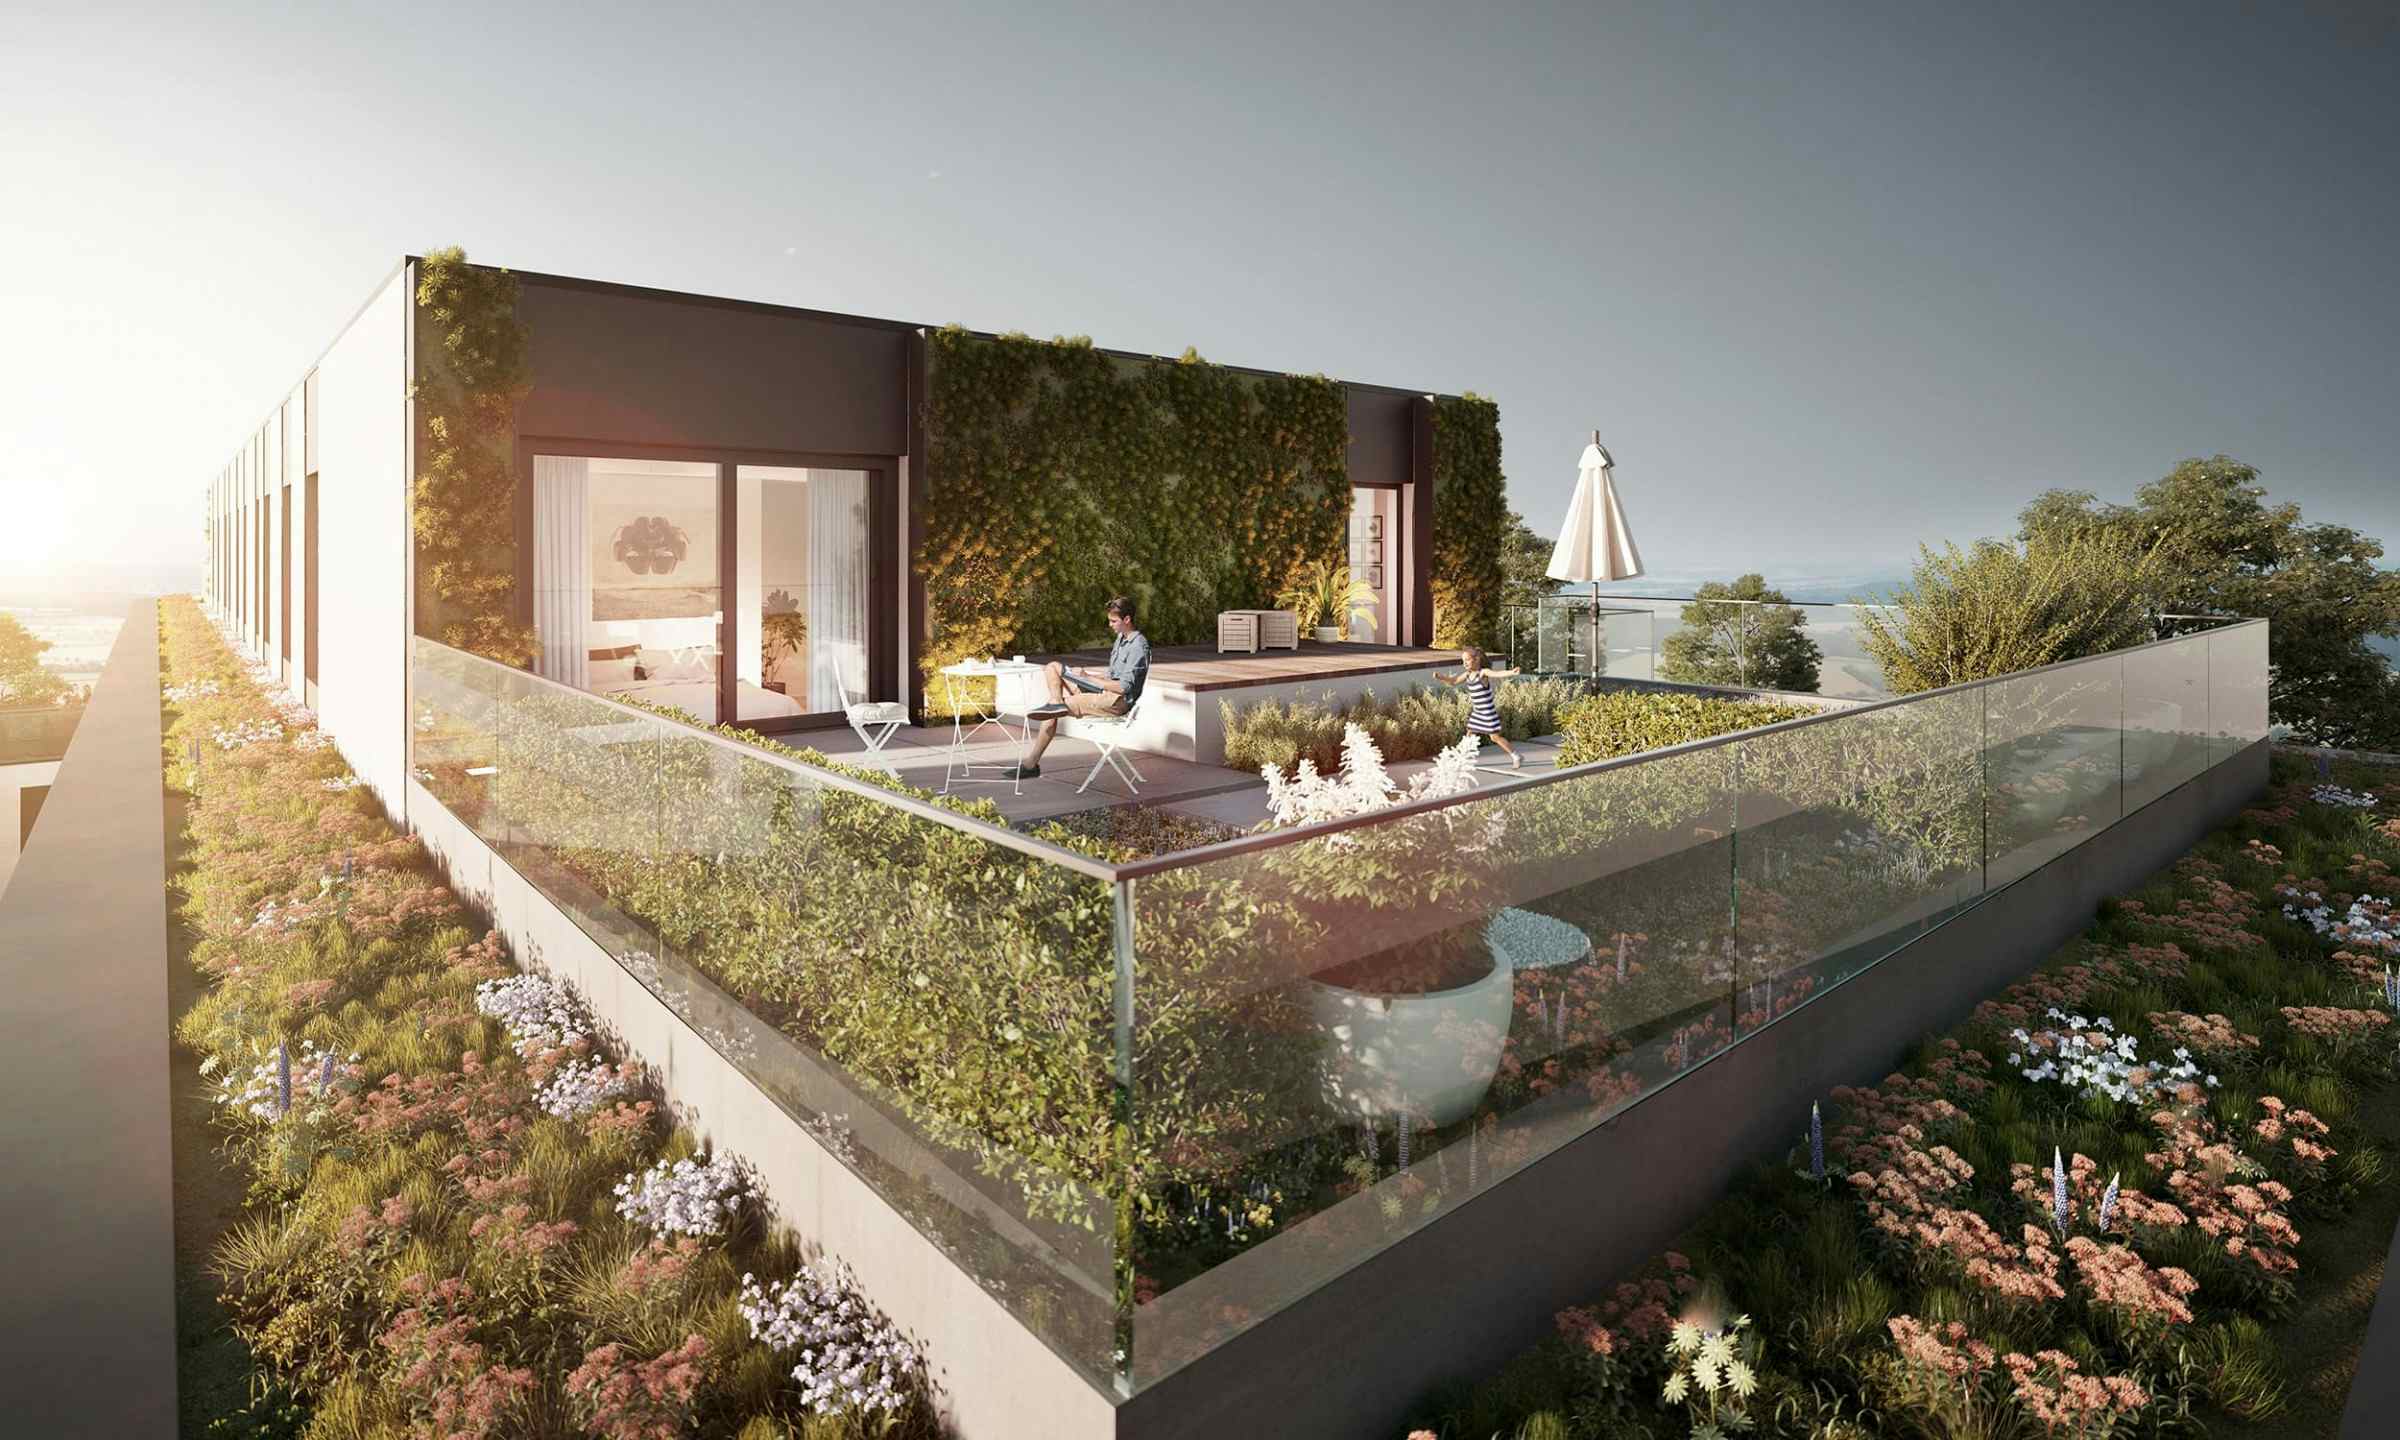 Einzigartiges Penthouse mit eigenem Dachgarten für traumhafte Stunden unter dem Himmel!